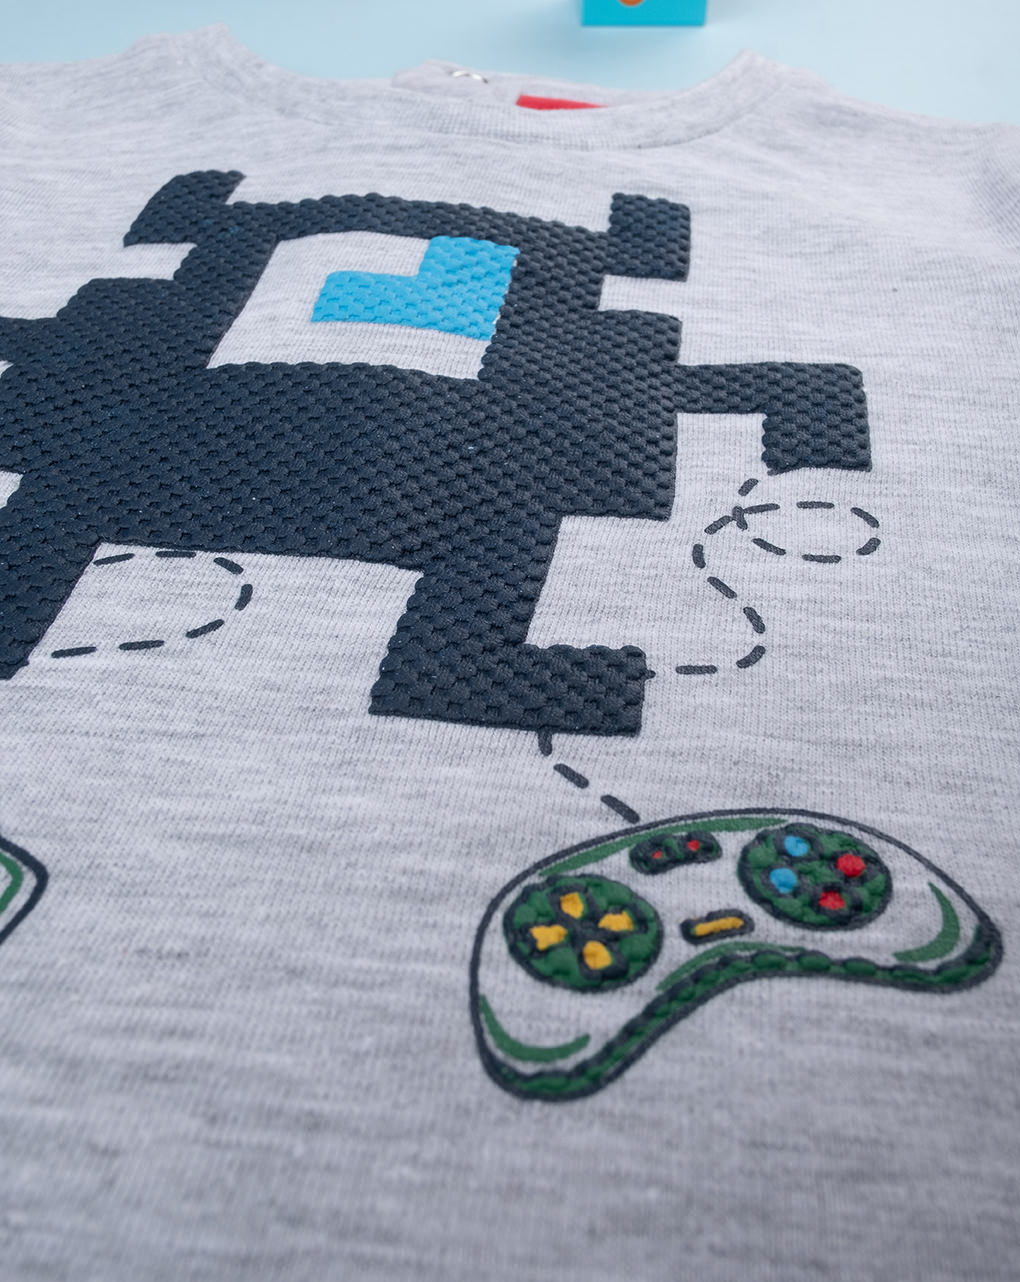 βρεφική μπλούζα με βιντεοπαιχνίδια για αγόρι - Prénatal